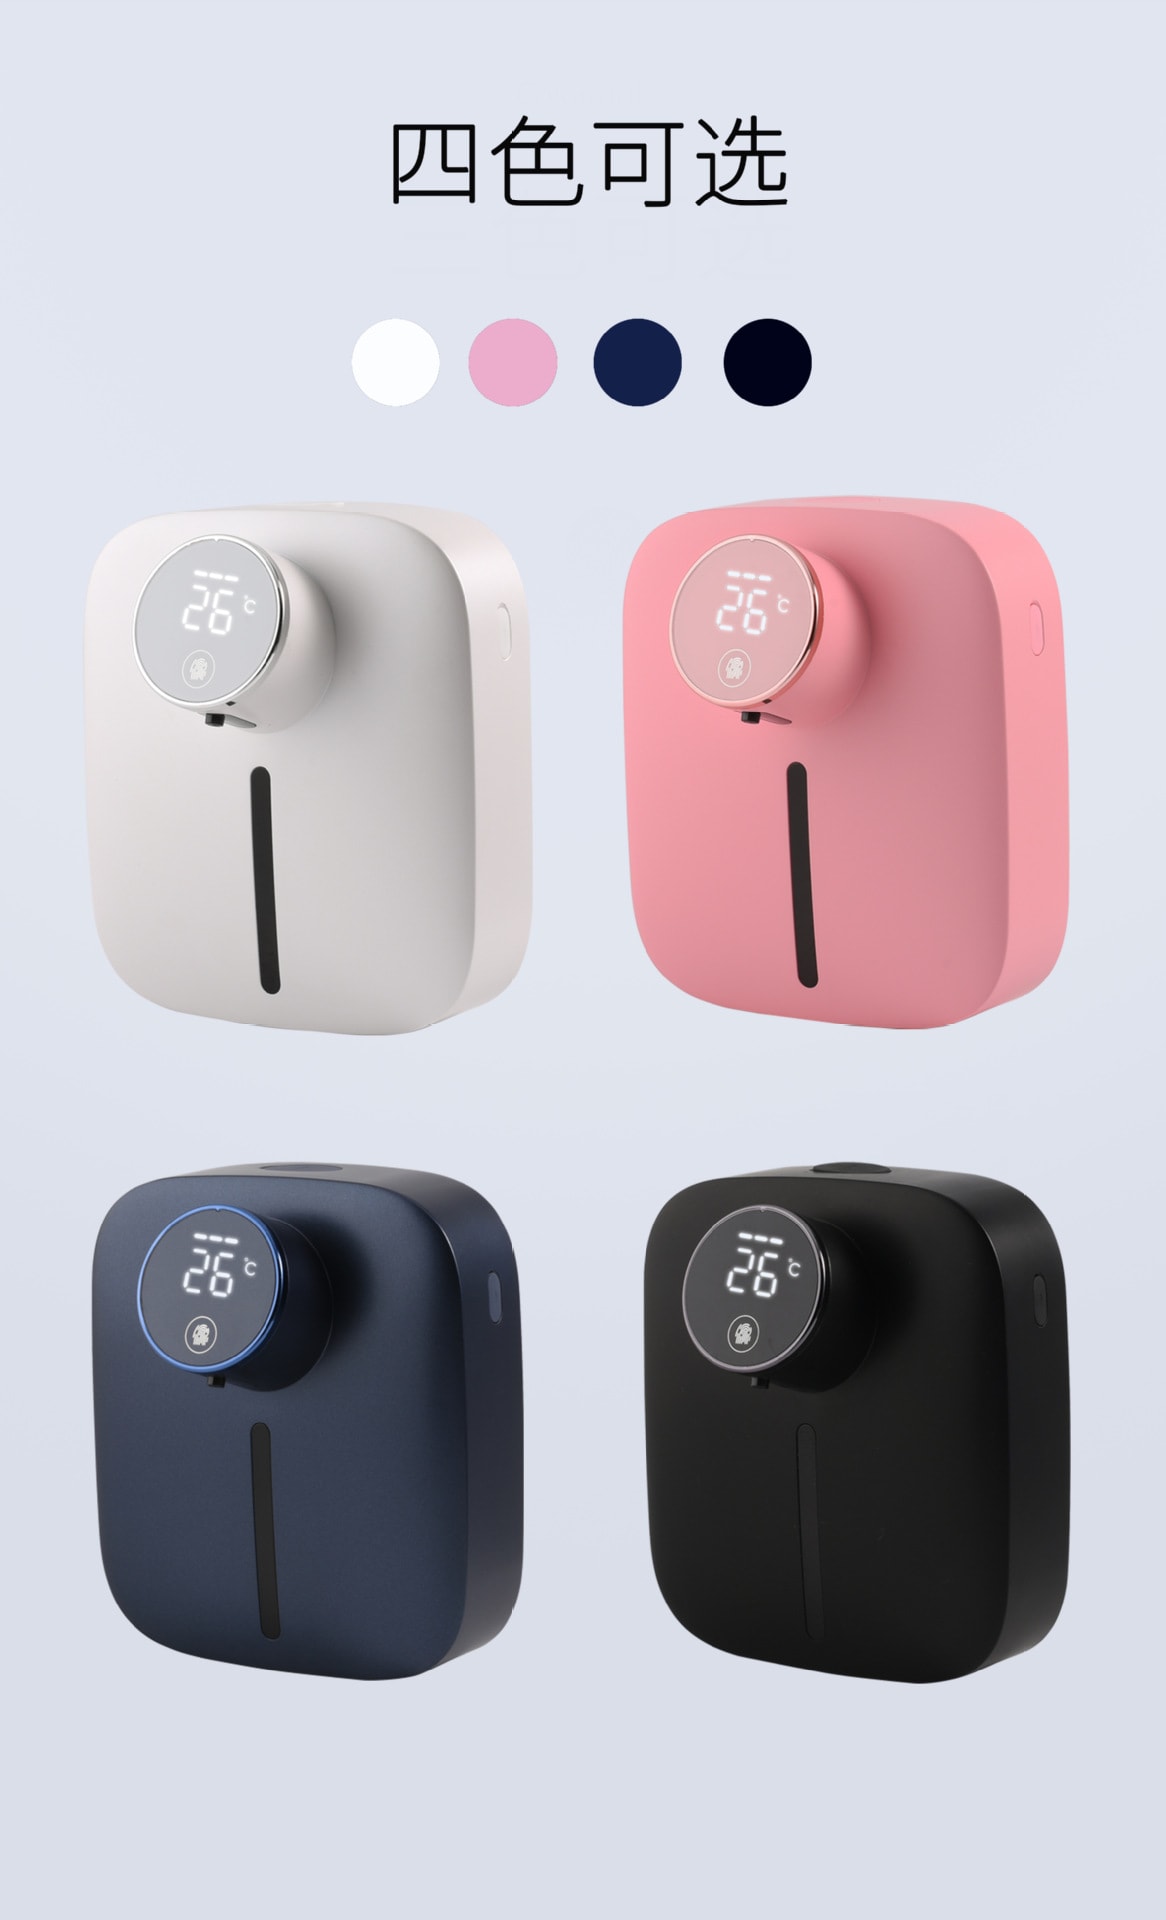 壁掛式自動感應皂液器X101 小型泡沫洗手機 給皂機 USB充電款